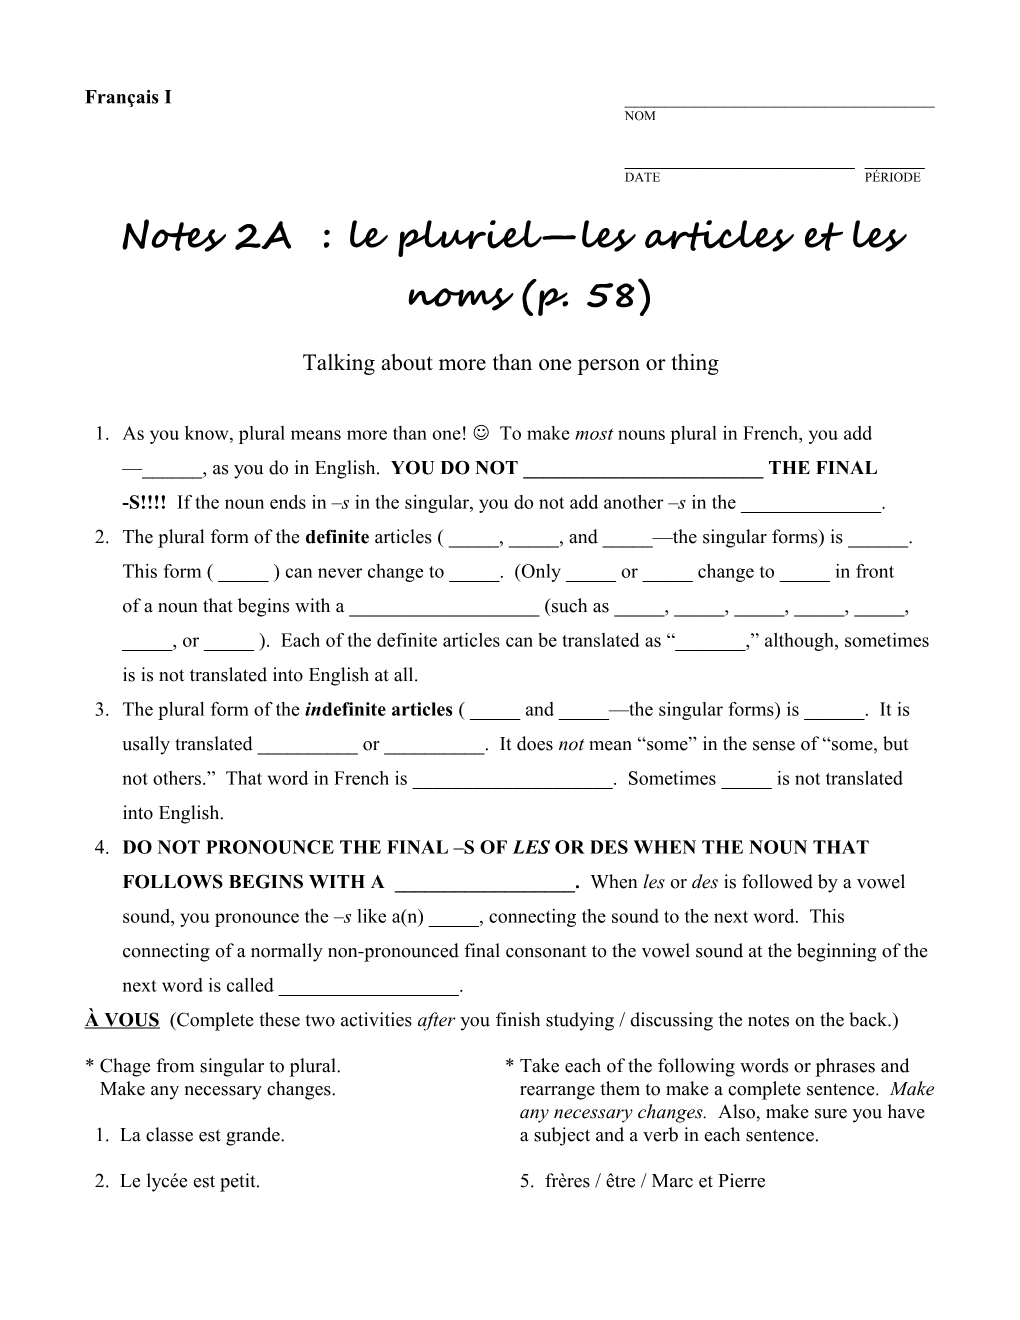 Notes 2A : Le Pluriel Les Articles Et Les Noms (P. 58)